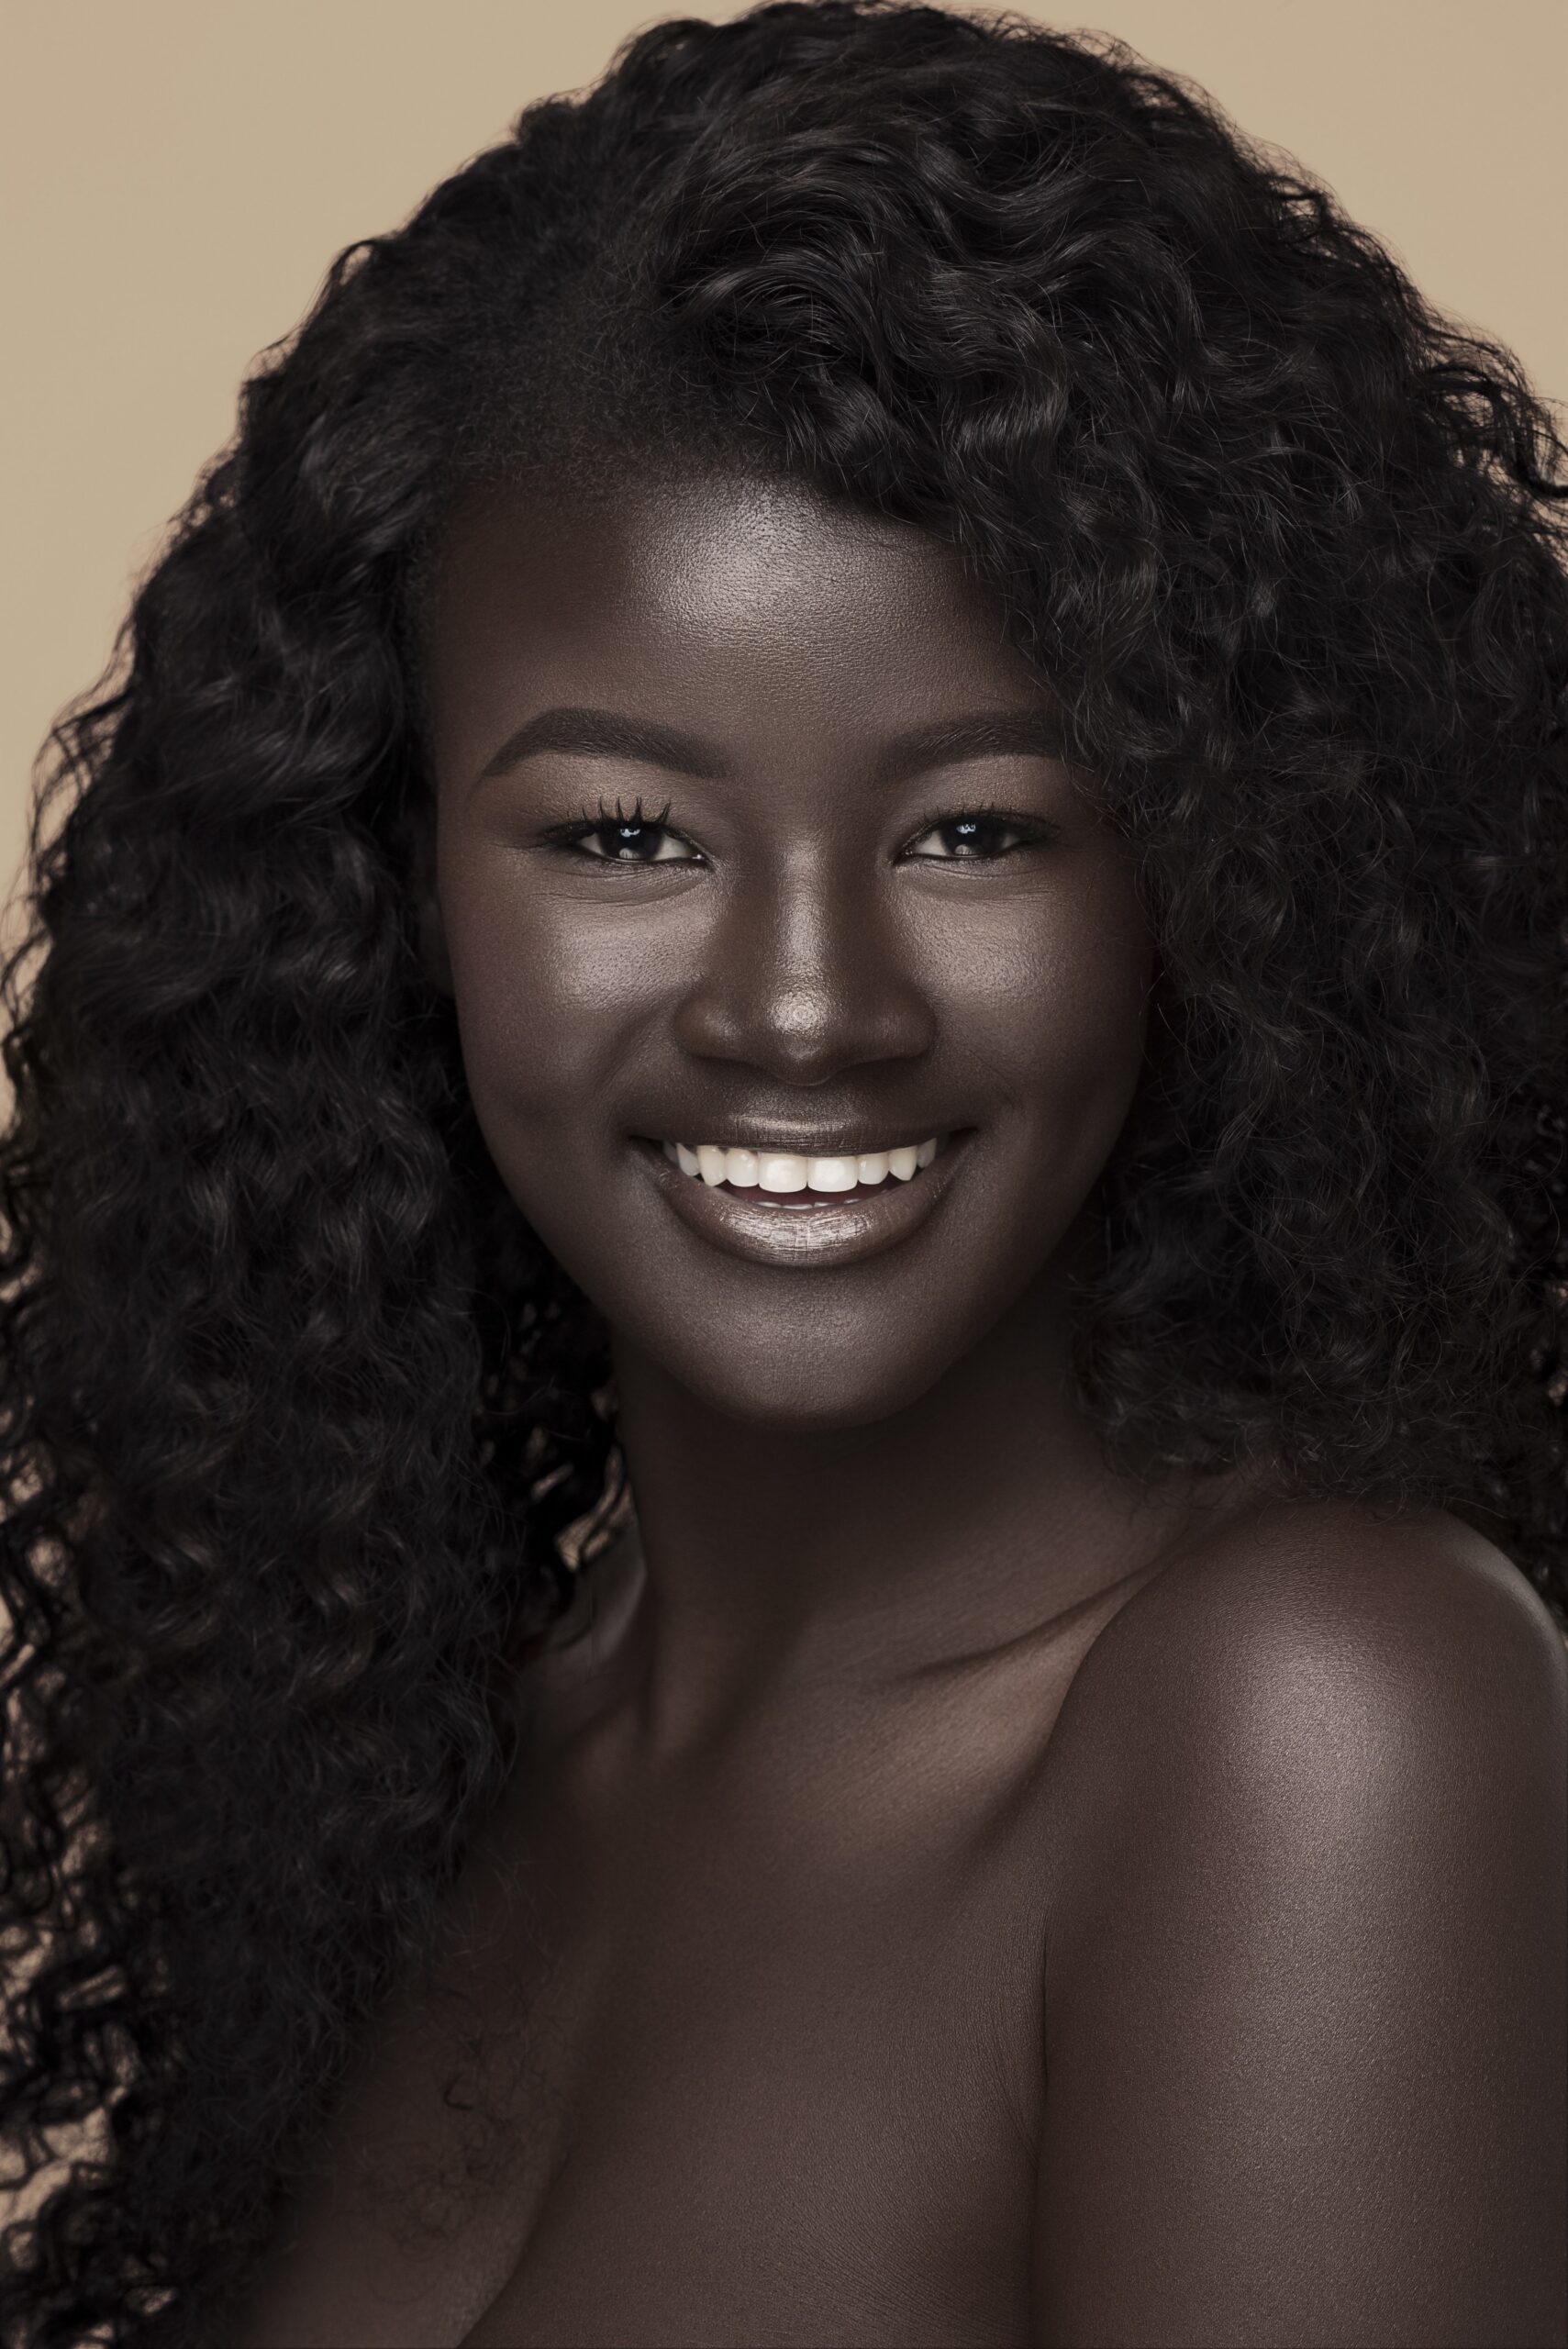 Makeup Tips for Dark Skin Tones, Courtesy of the "Melanin Goddess"